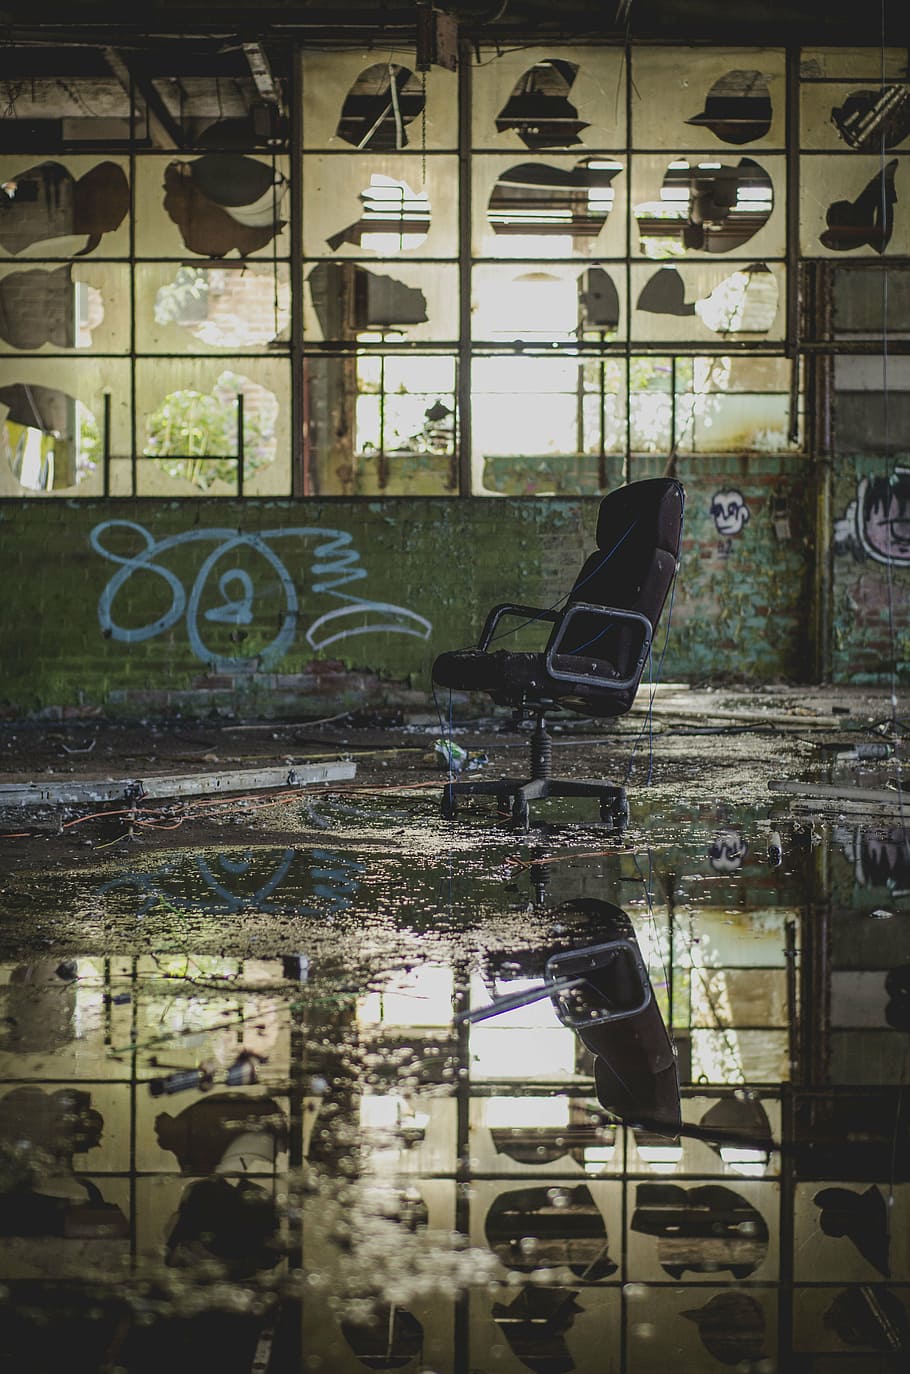 bege, preto, abstrato, pintura, cadeira, reflexão, agua, inundação, abandonado, construção